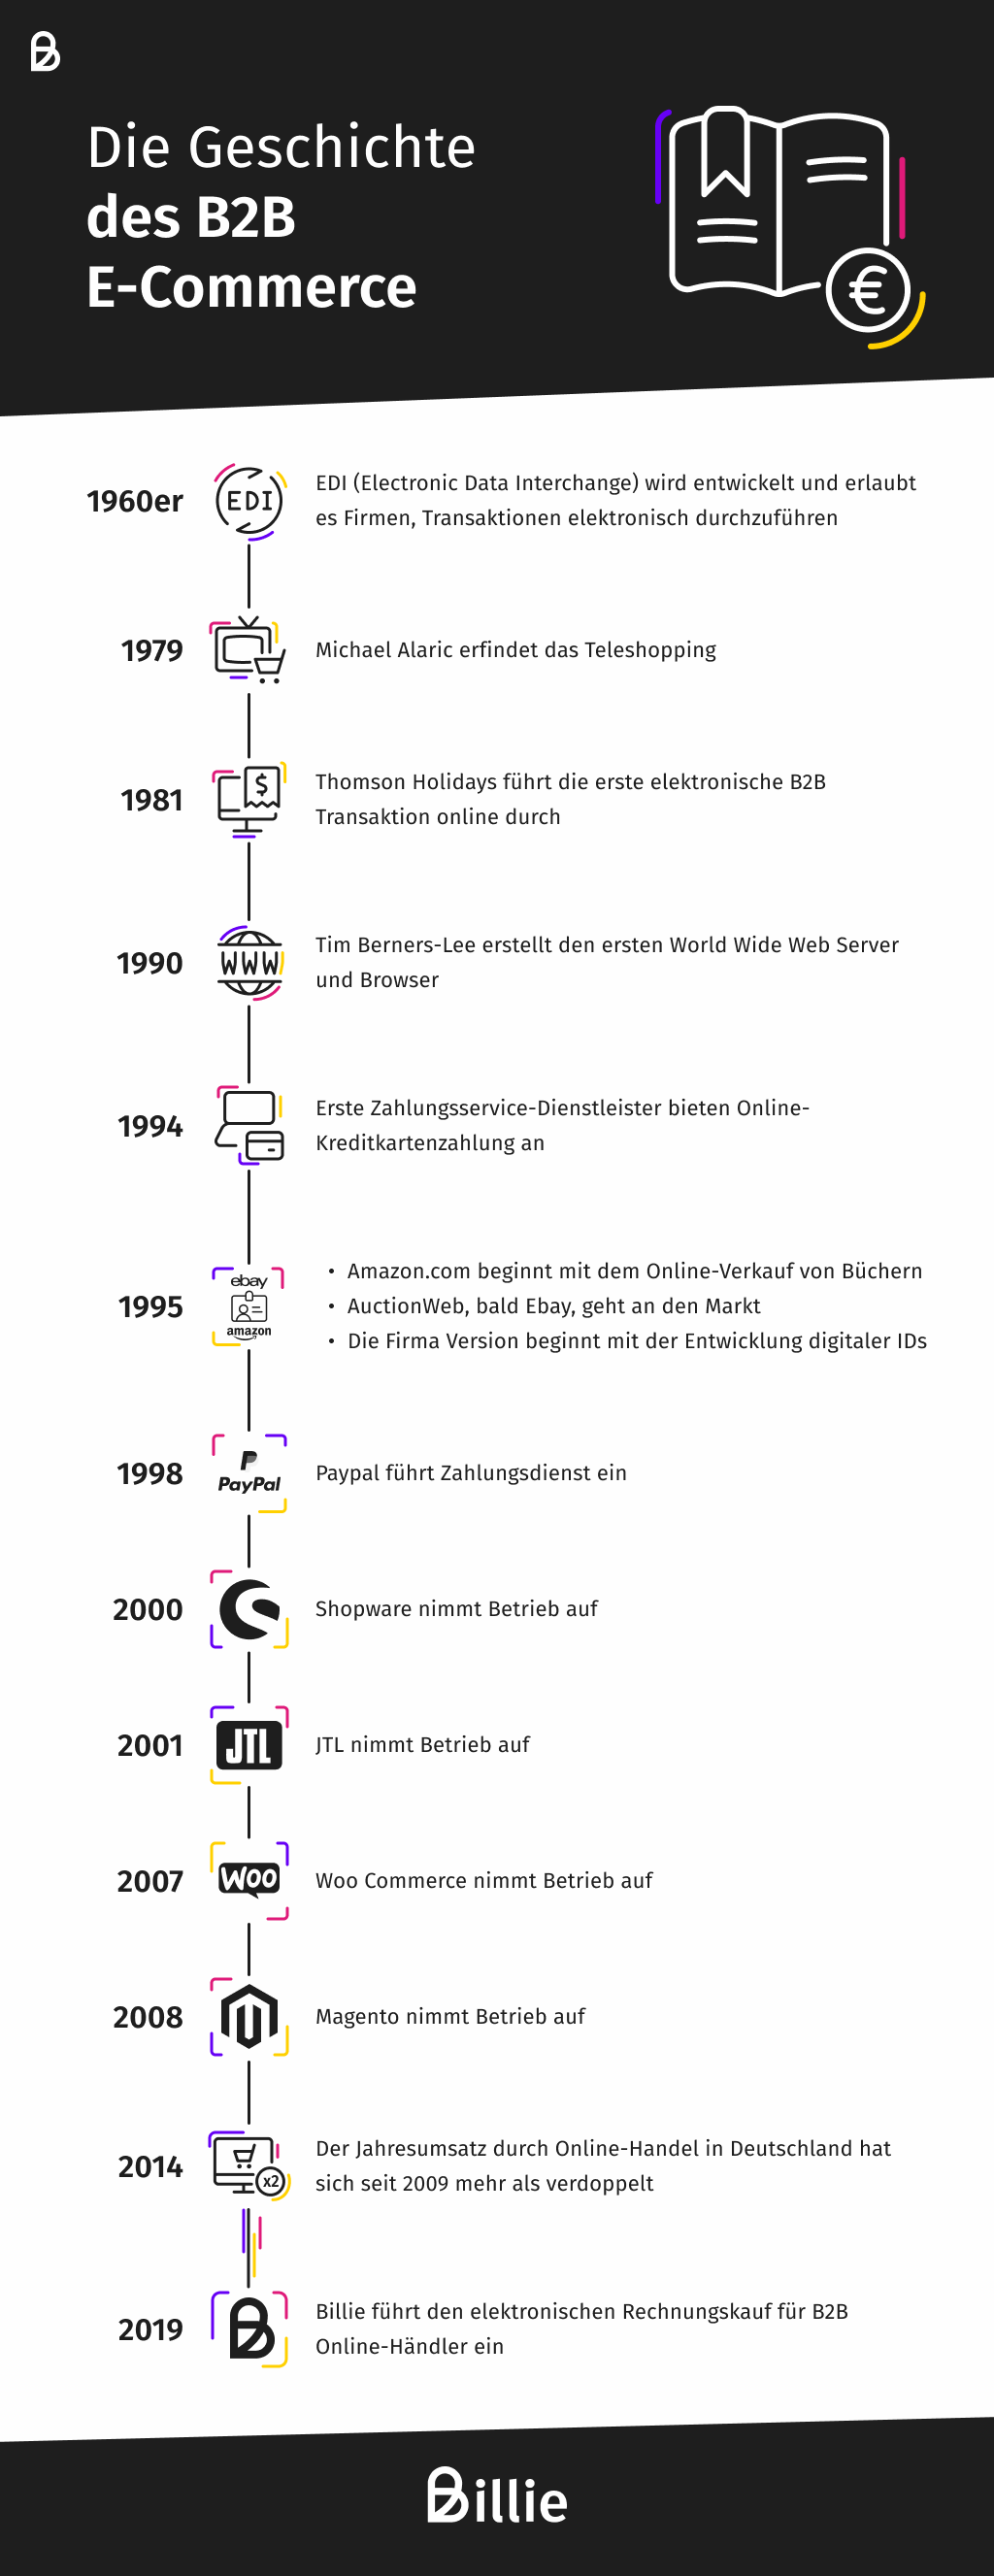 History of B2B E-commerce